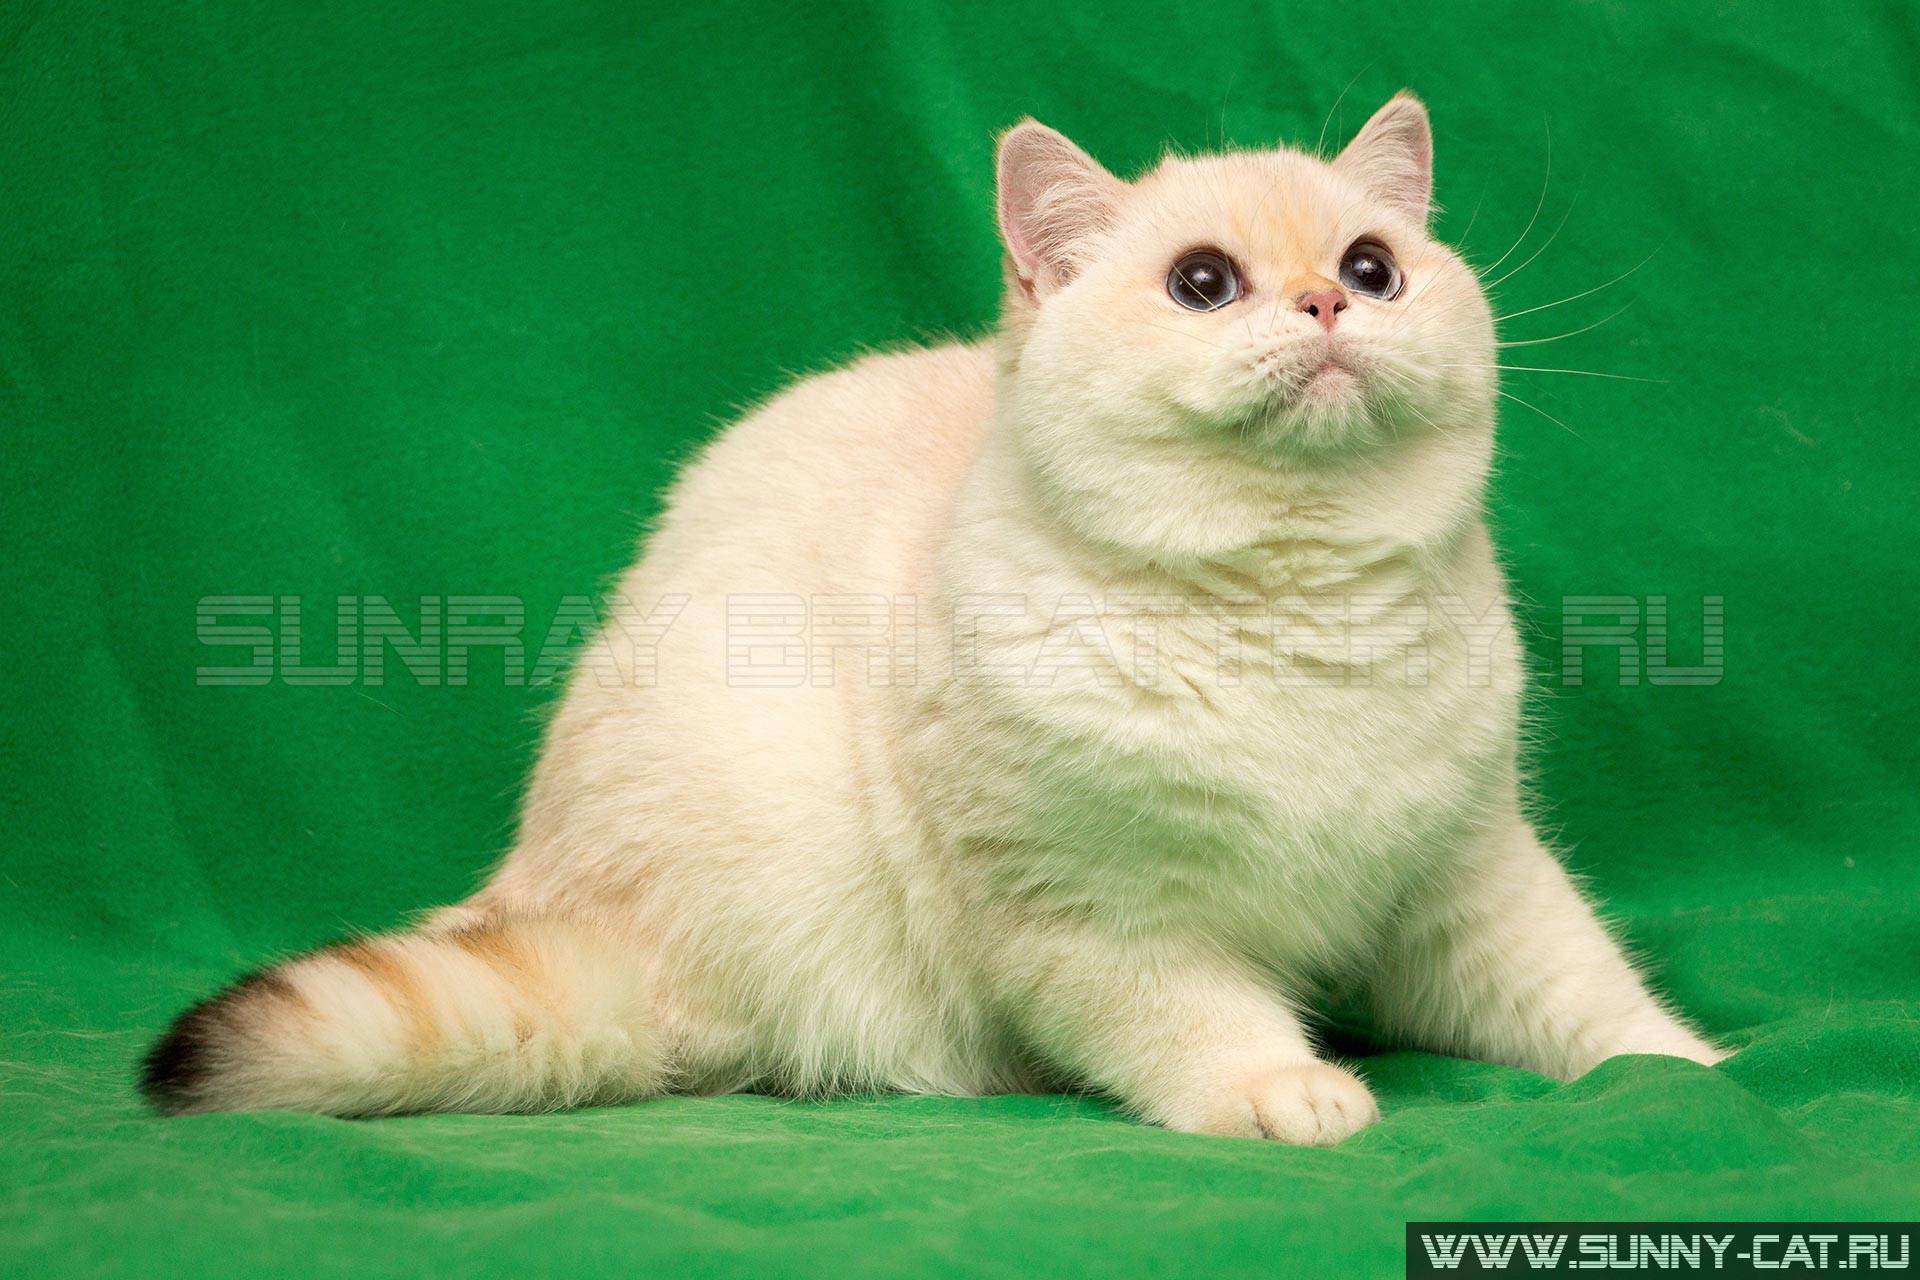 Имена для белых котят на русском и на английском языках